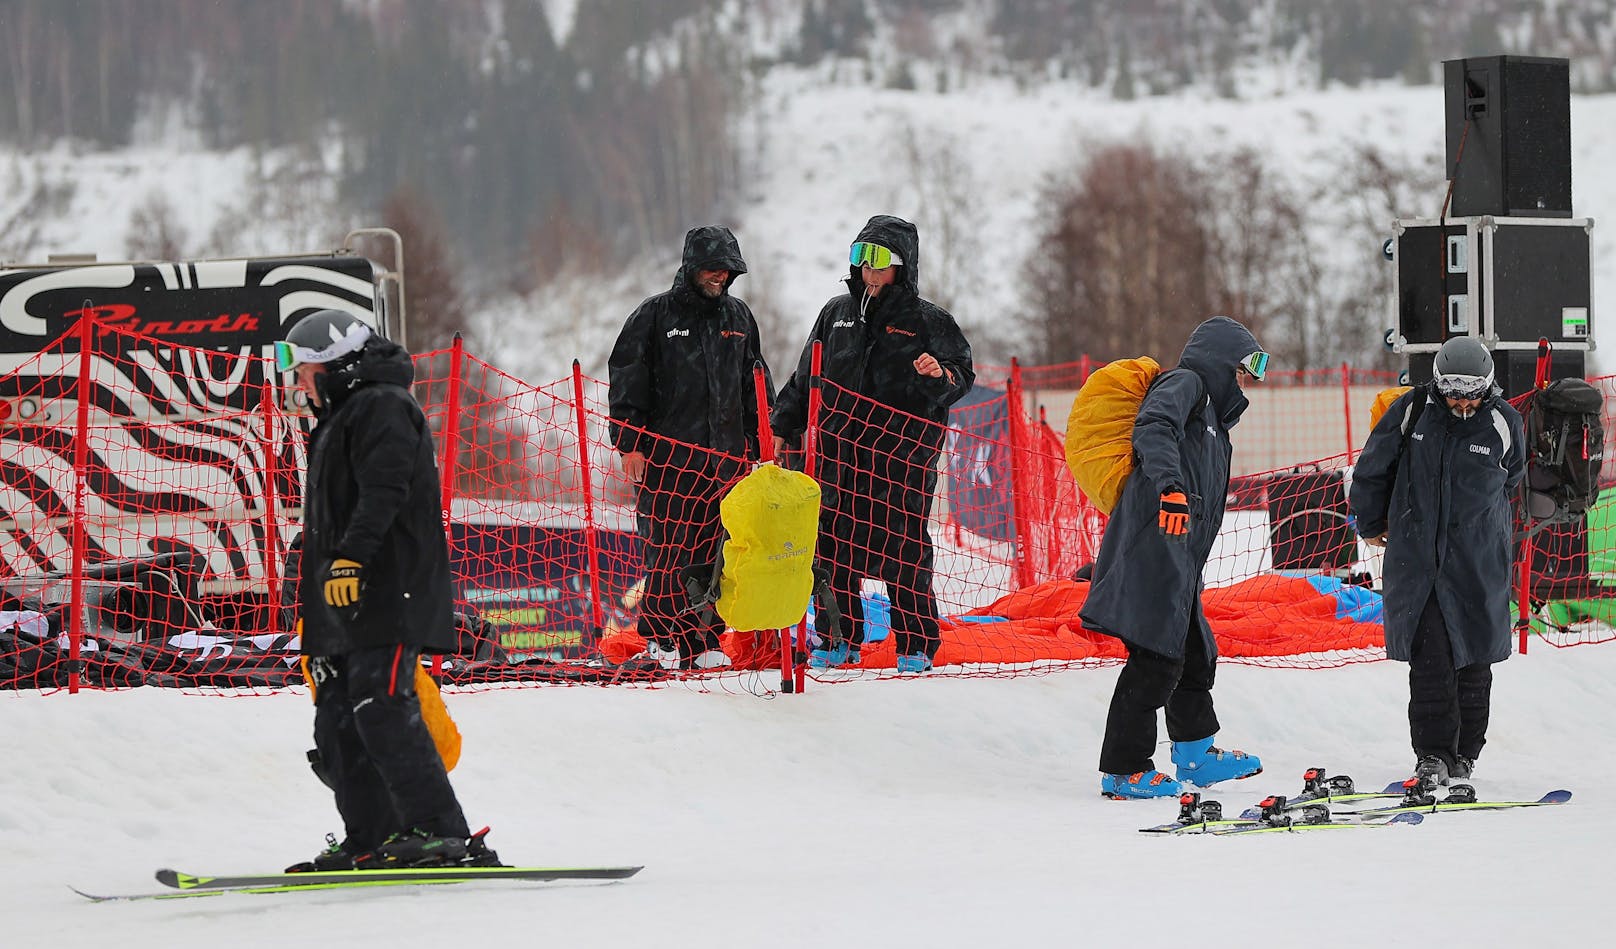 Durch die Absage des Technikwochenendes in Kranjska Gora hatte ÖSV-Star Manuel Feller die kleine Kristallkugel im Slalom-Weltcup sicher.